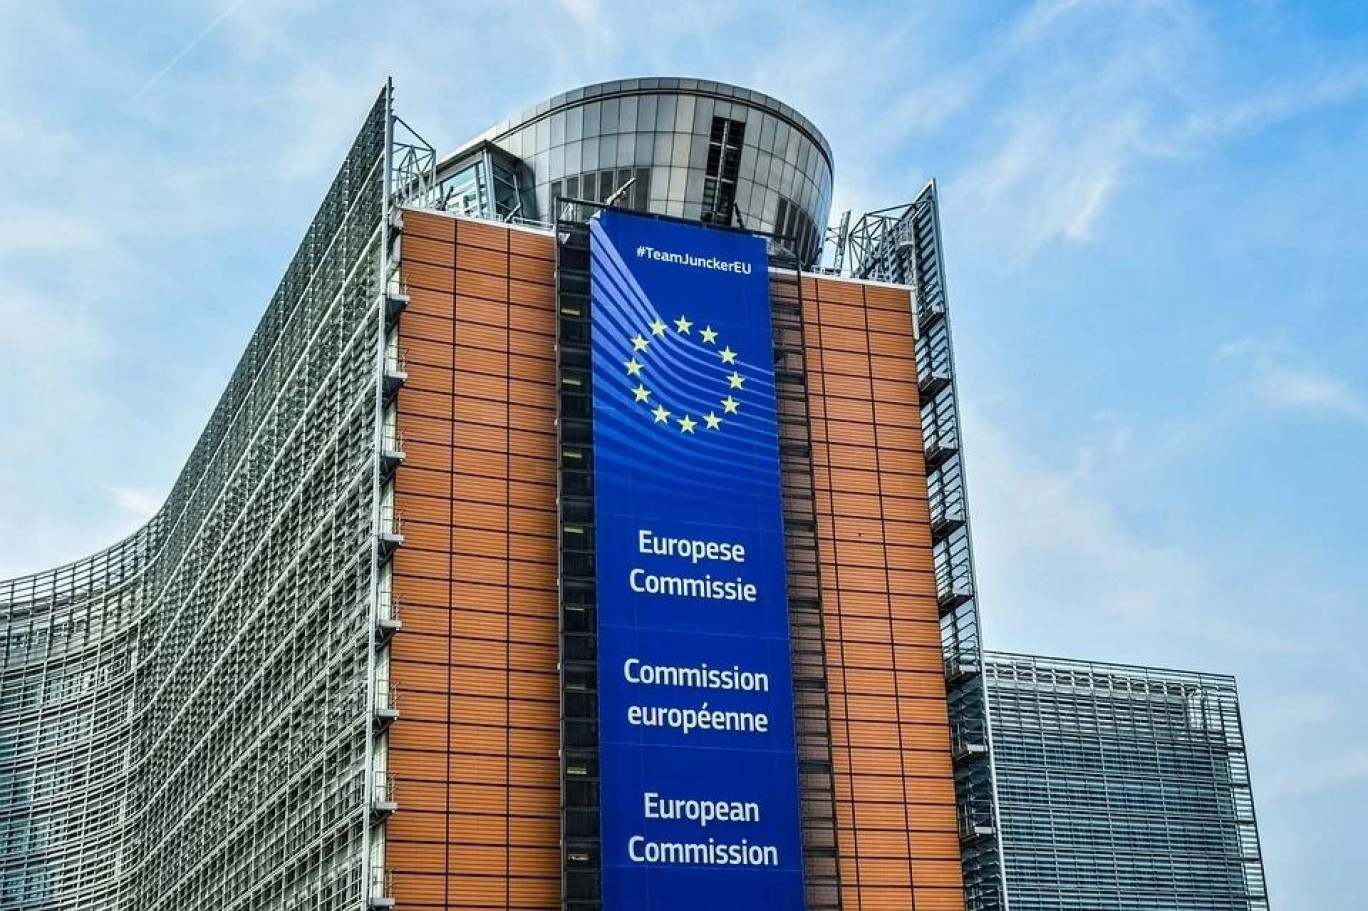 Les États membres de l’Union européenne (UE) viennent de soumettre leur feuille de route à la Commission européenne